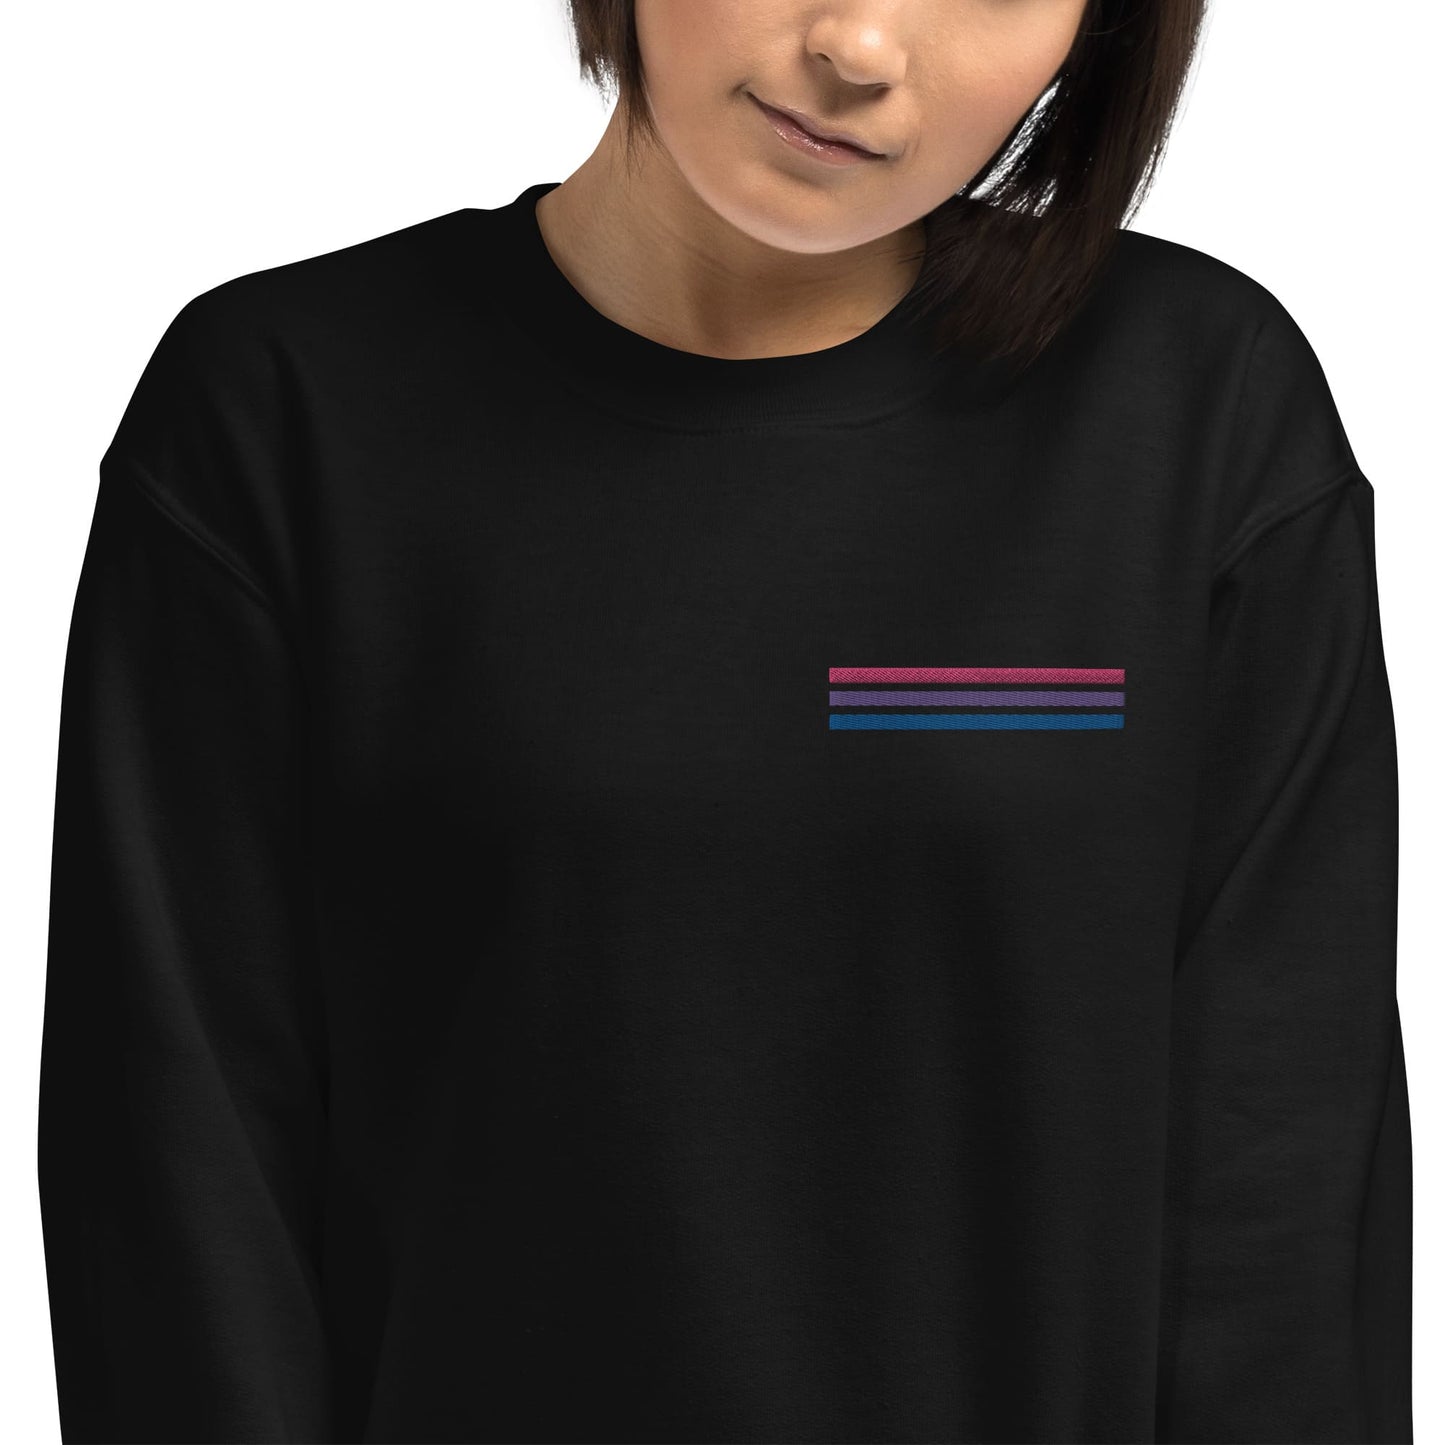 bisexual sweatshirt, subtle bi pride flag embroidered pocket design hooded sweater, model 1